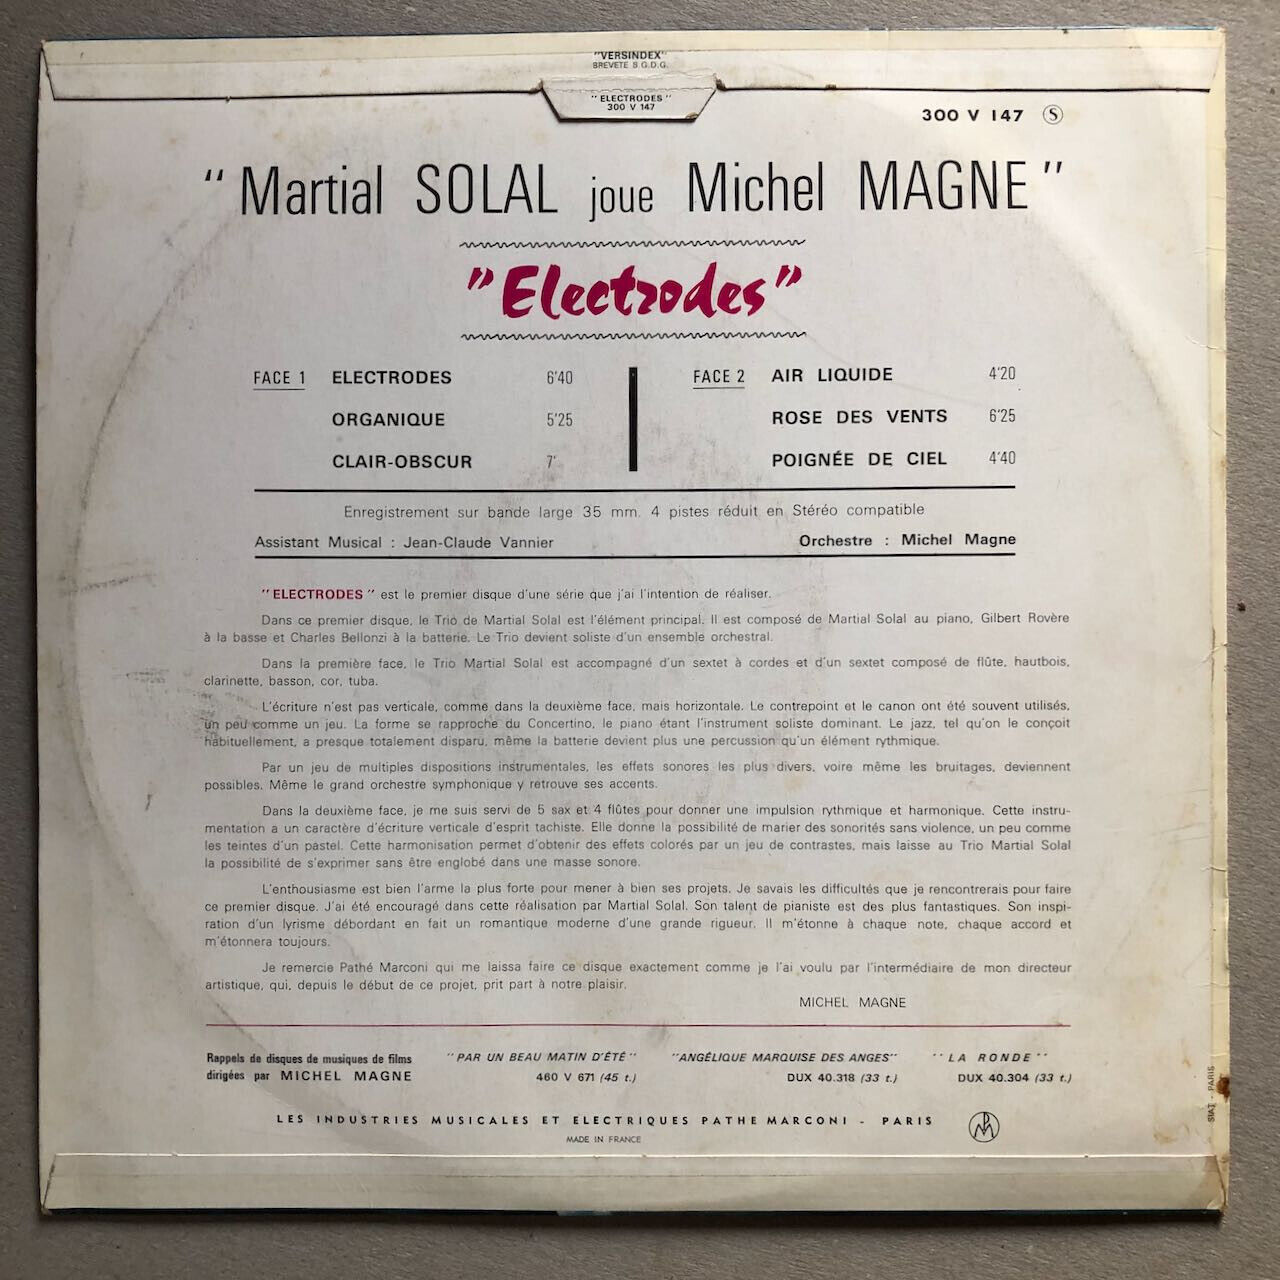 Martial Solal joue Michel Magne — Électrode — 1st press Ducretet 300v147 — 1966.